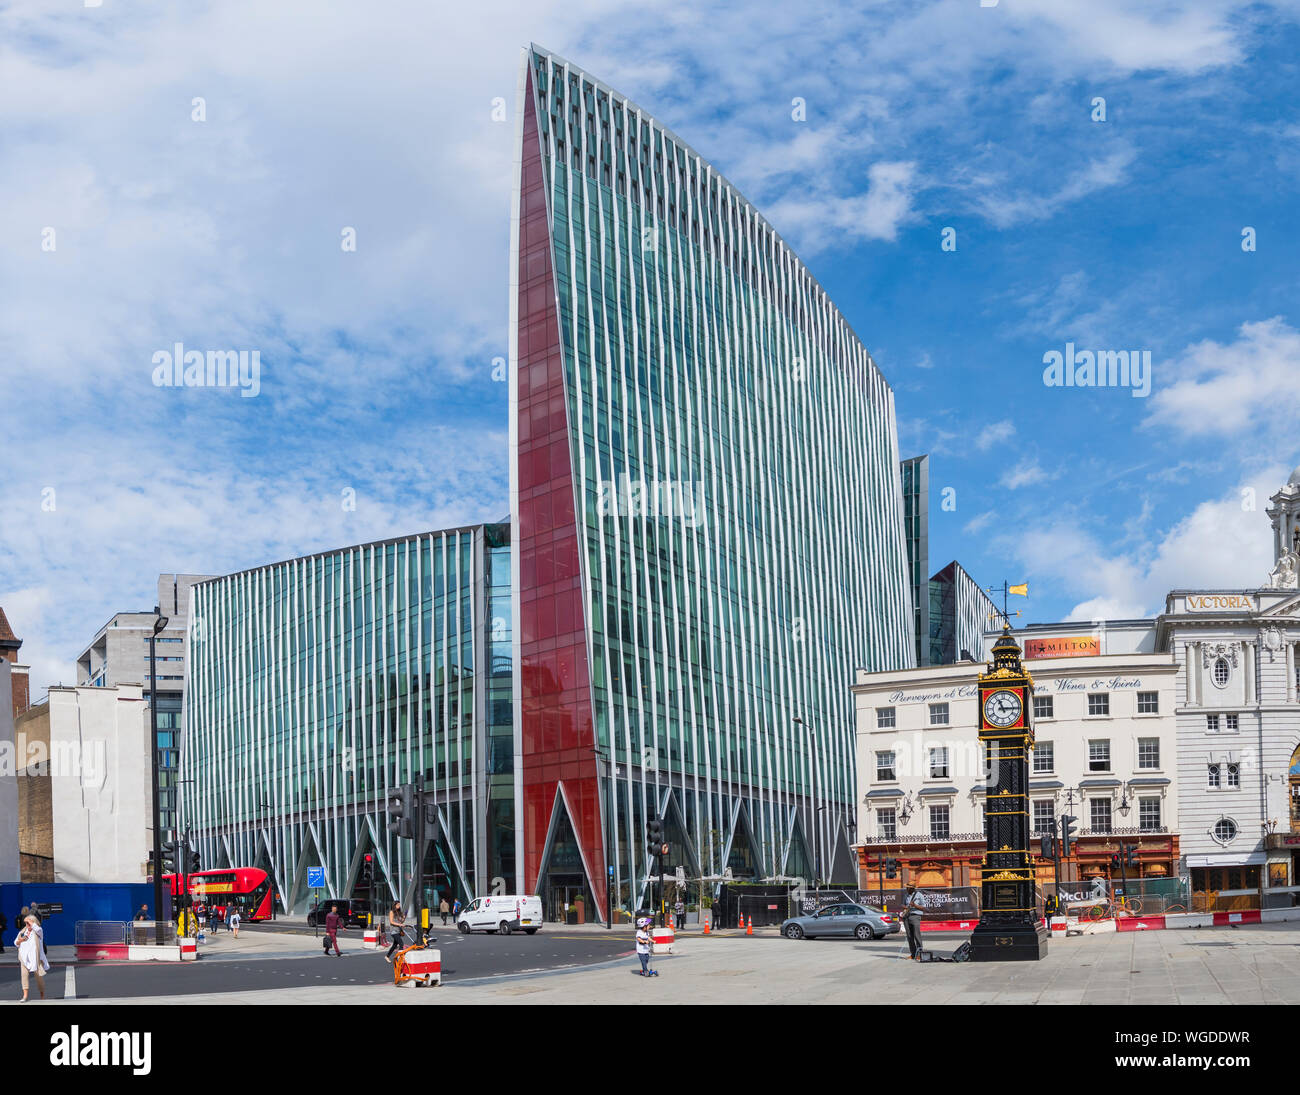 La Victoria, une architecture contemporaine de l'édifice de bureaux moderne urbain à Victoria, City of Westminster, Londres, Angleterre, Royaume-Uni. Banque D'Images